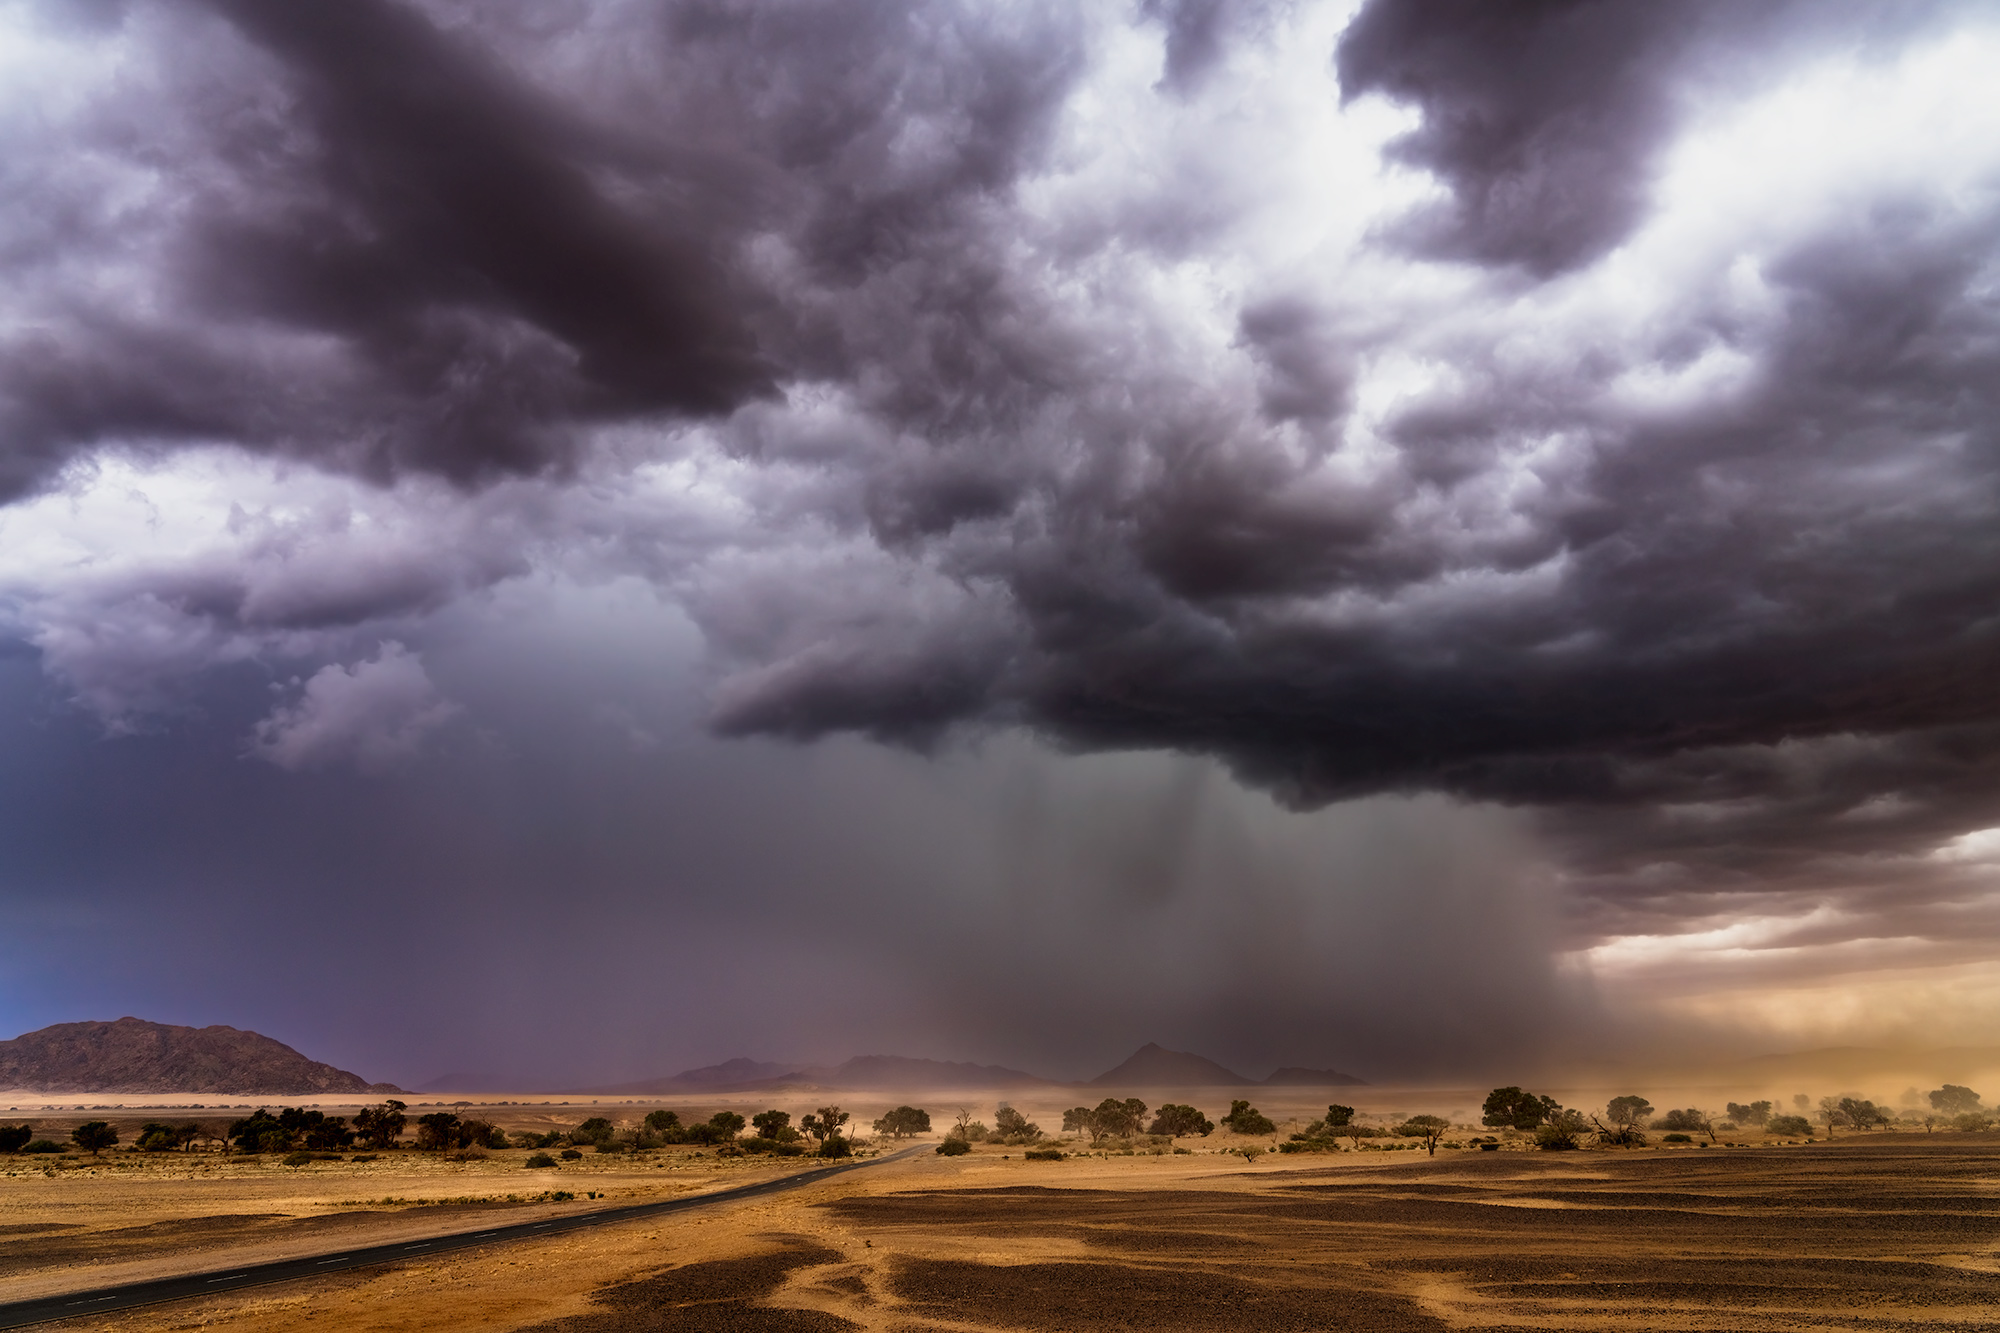 Eine Landschaftsaufnahme im Sturm aufgenommen auf einer Fotoreise mit Benny Rebel in Afrika.